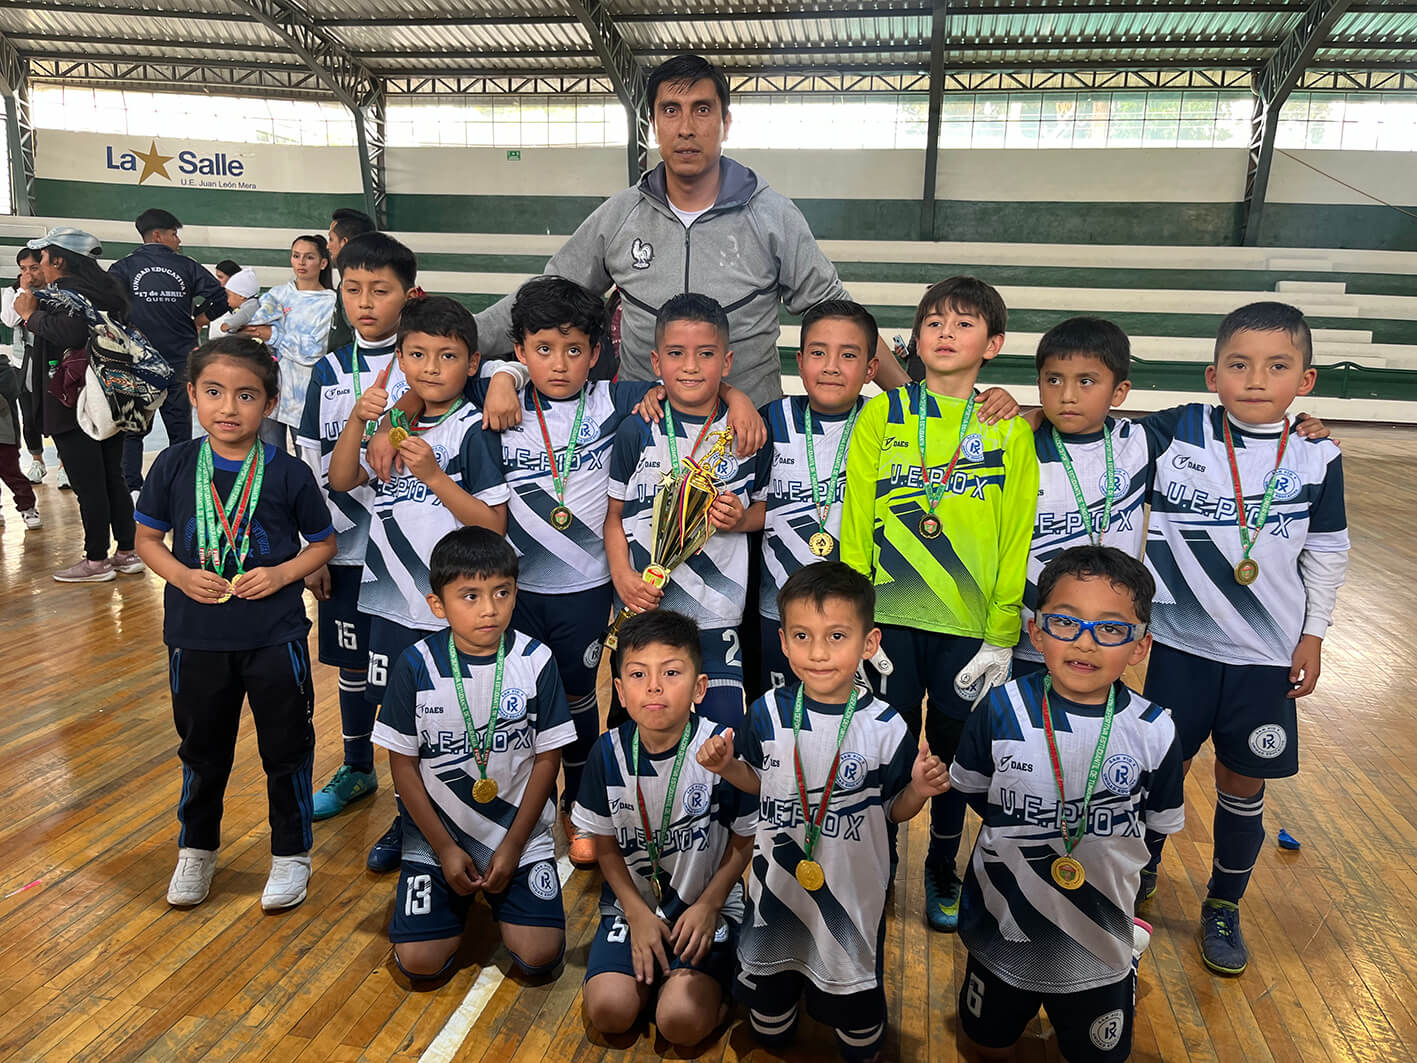 La selección masculina del Pio X mostró su alegría tras lograr el primer lugar Interescolar de Fútbol Sala en Tungurahua.